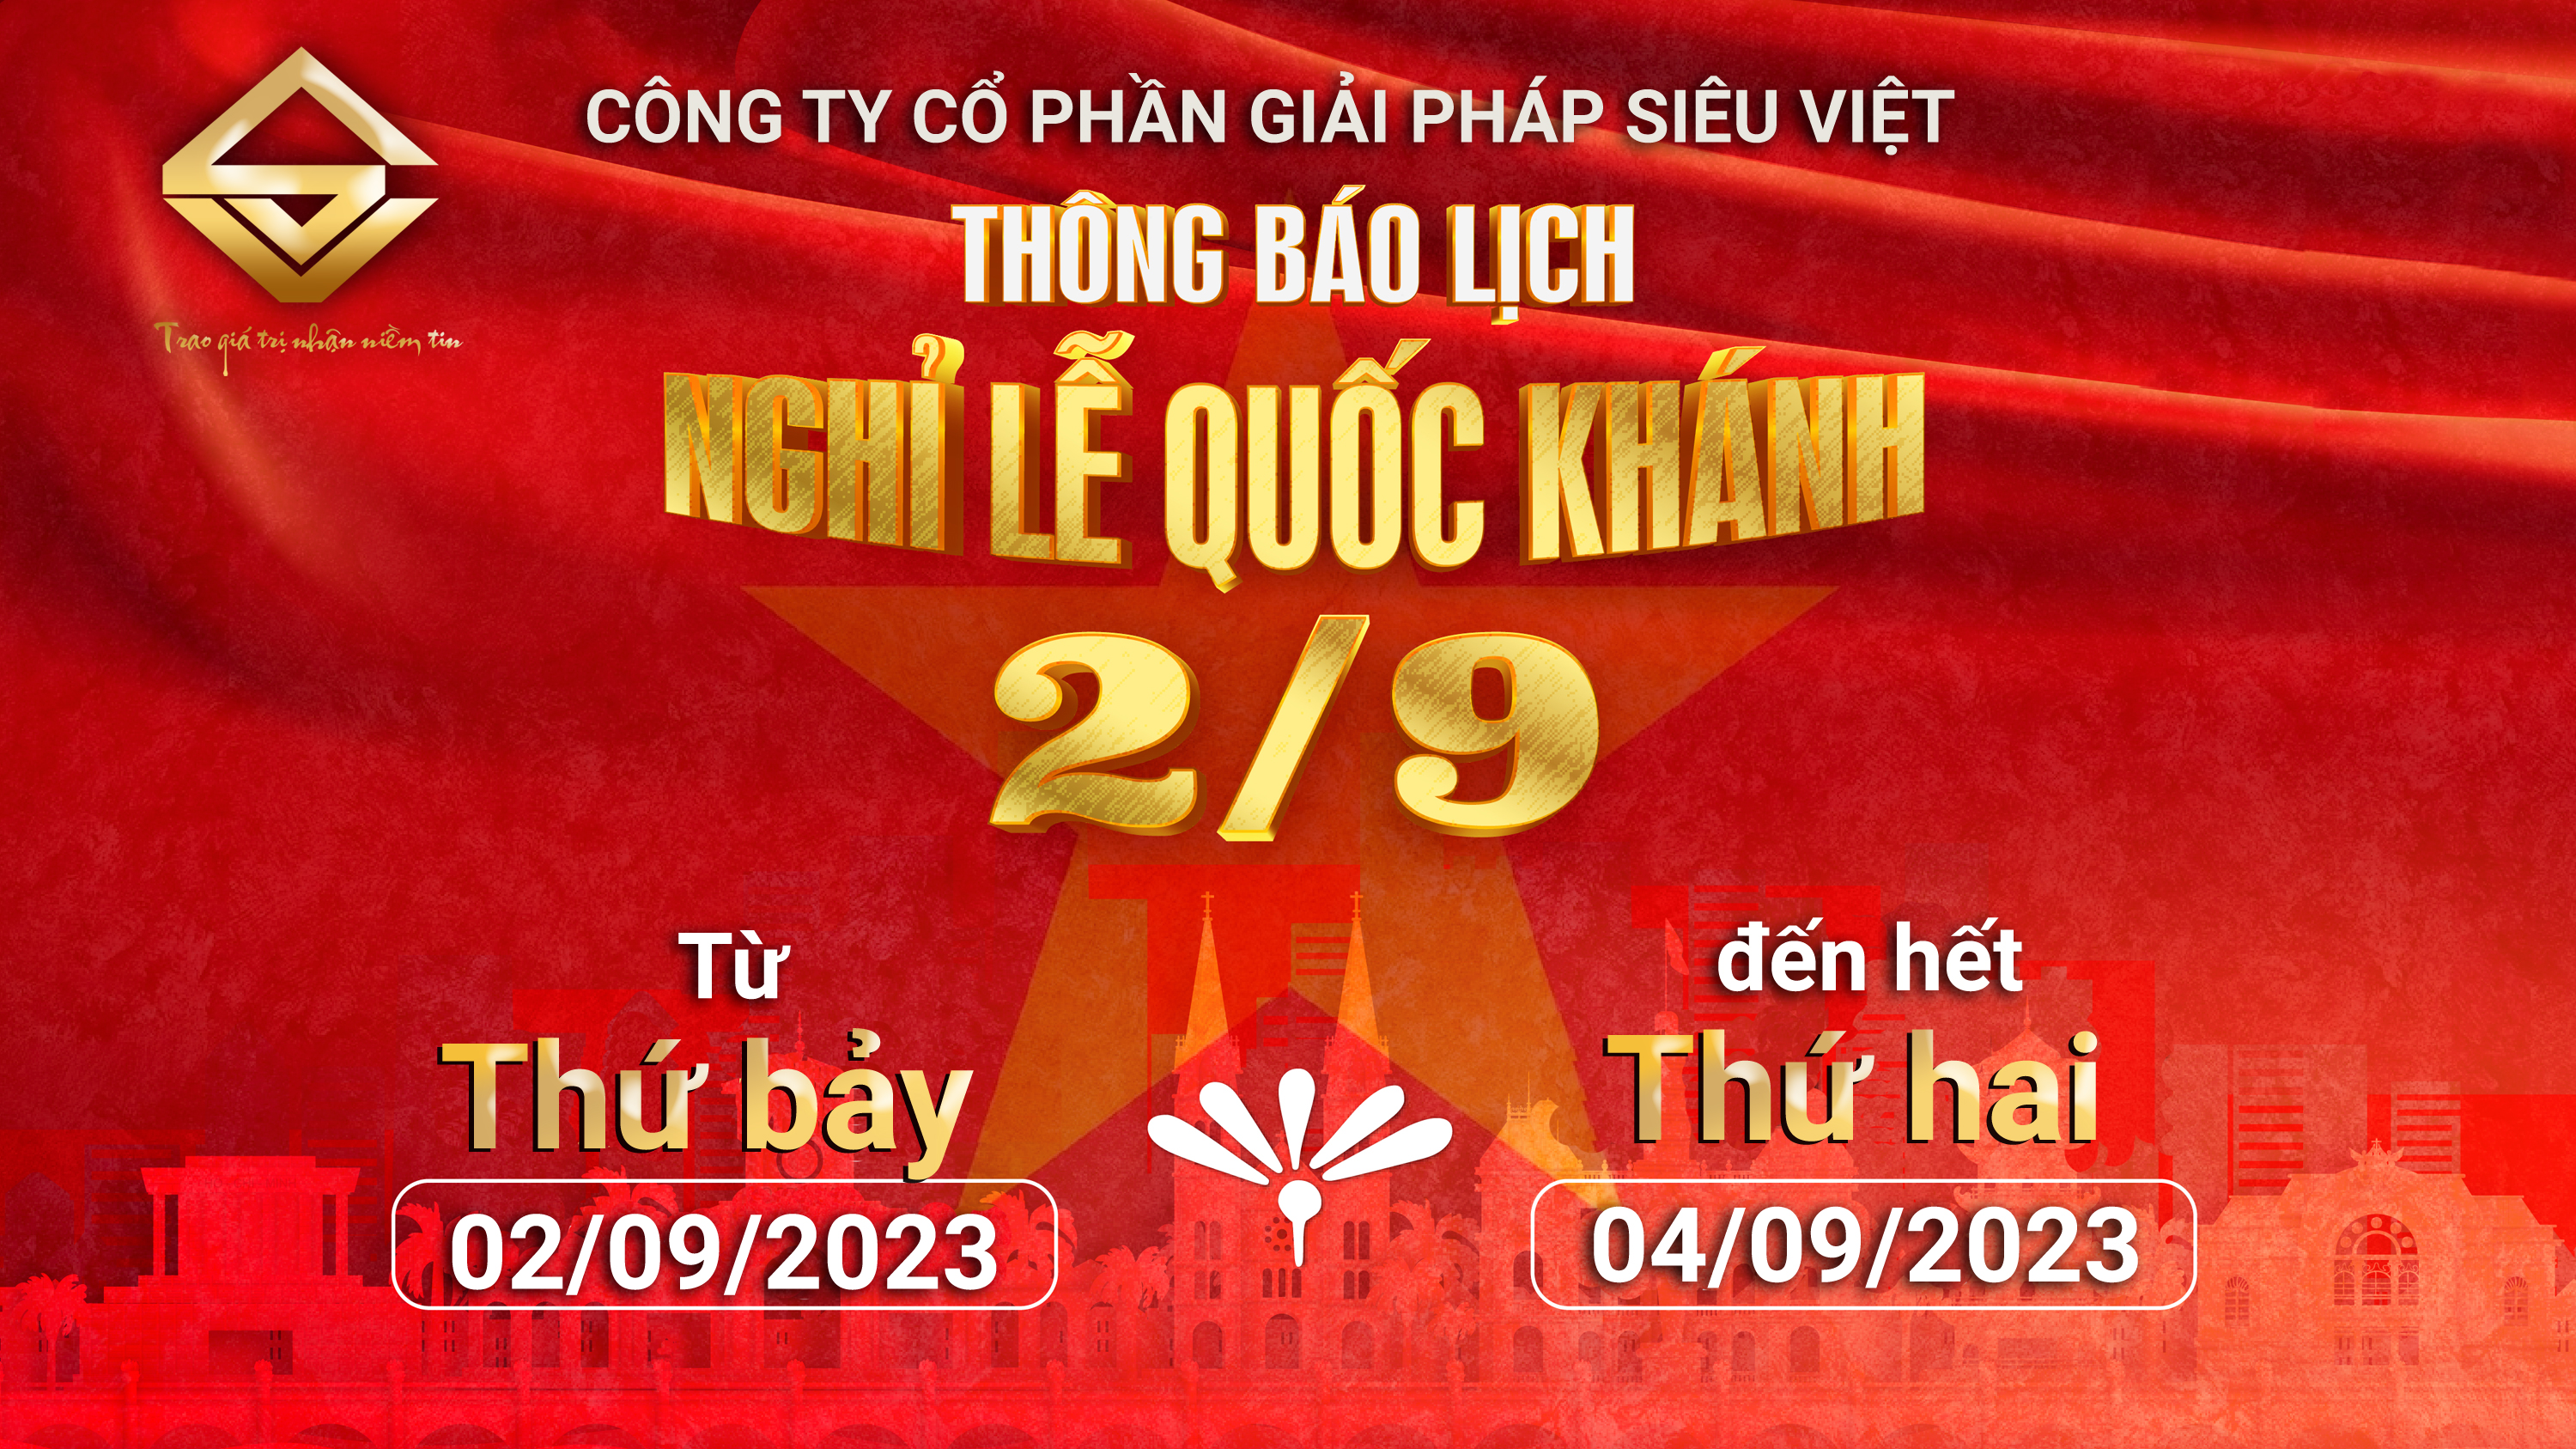 Thông báo lịch nghỉ lễ Quốc Khánh 2/9/2023 tại công ty Siêu Việt